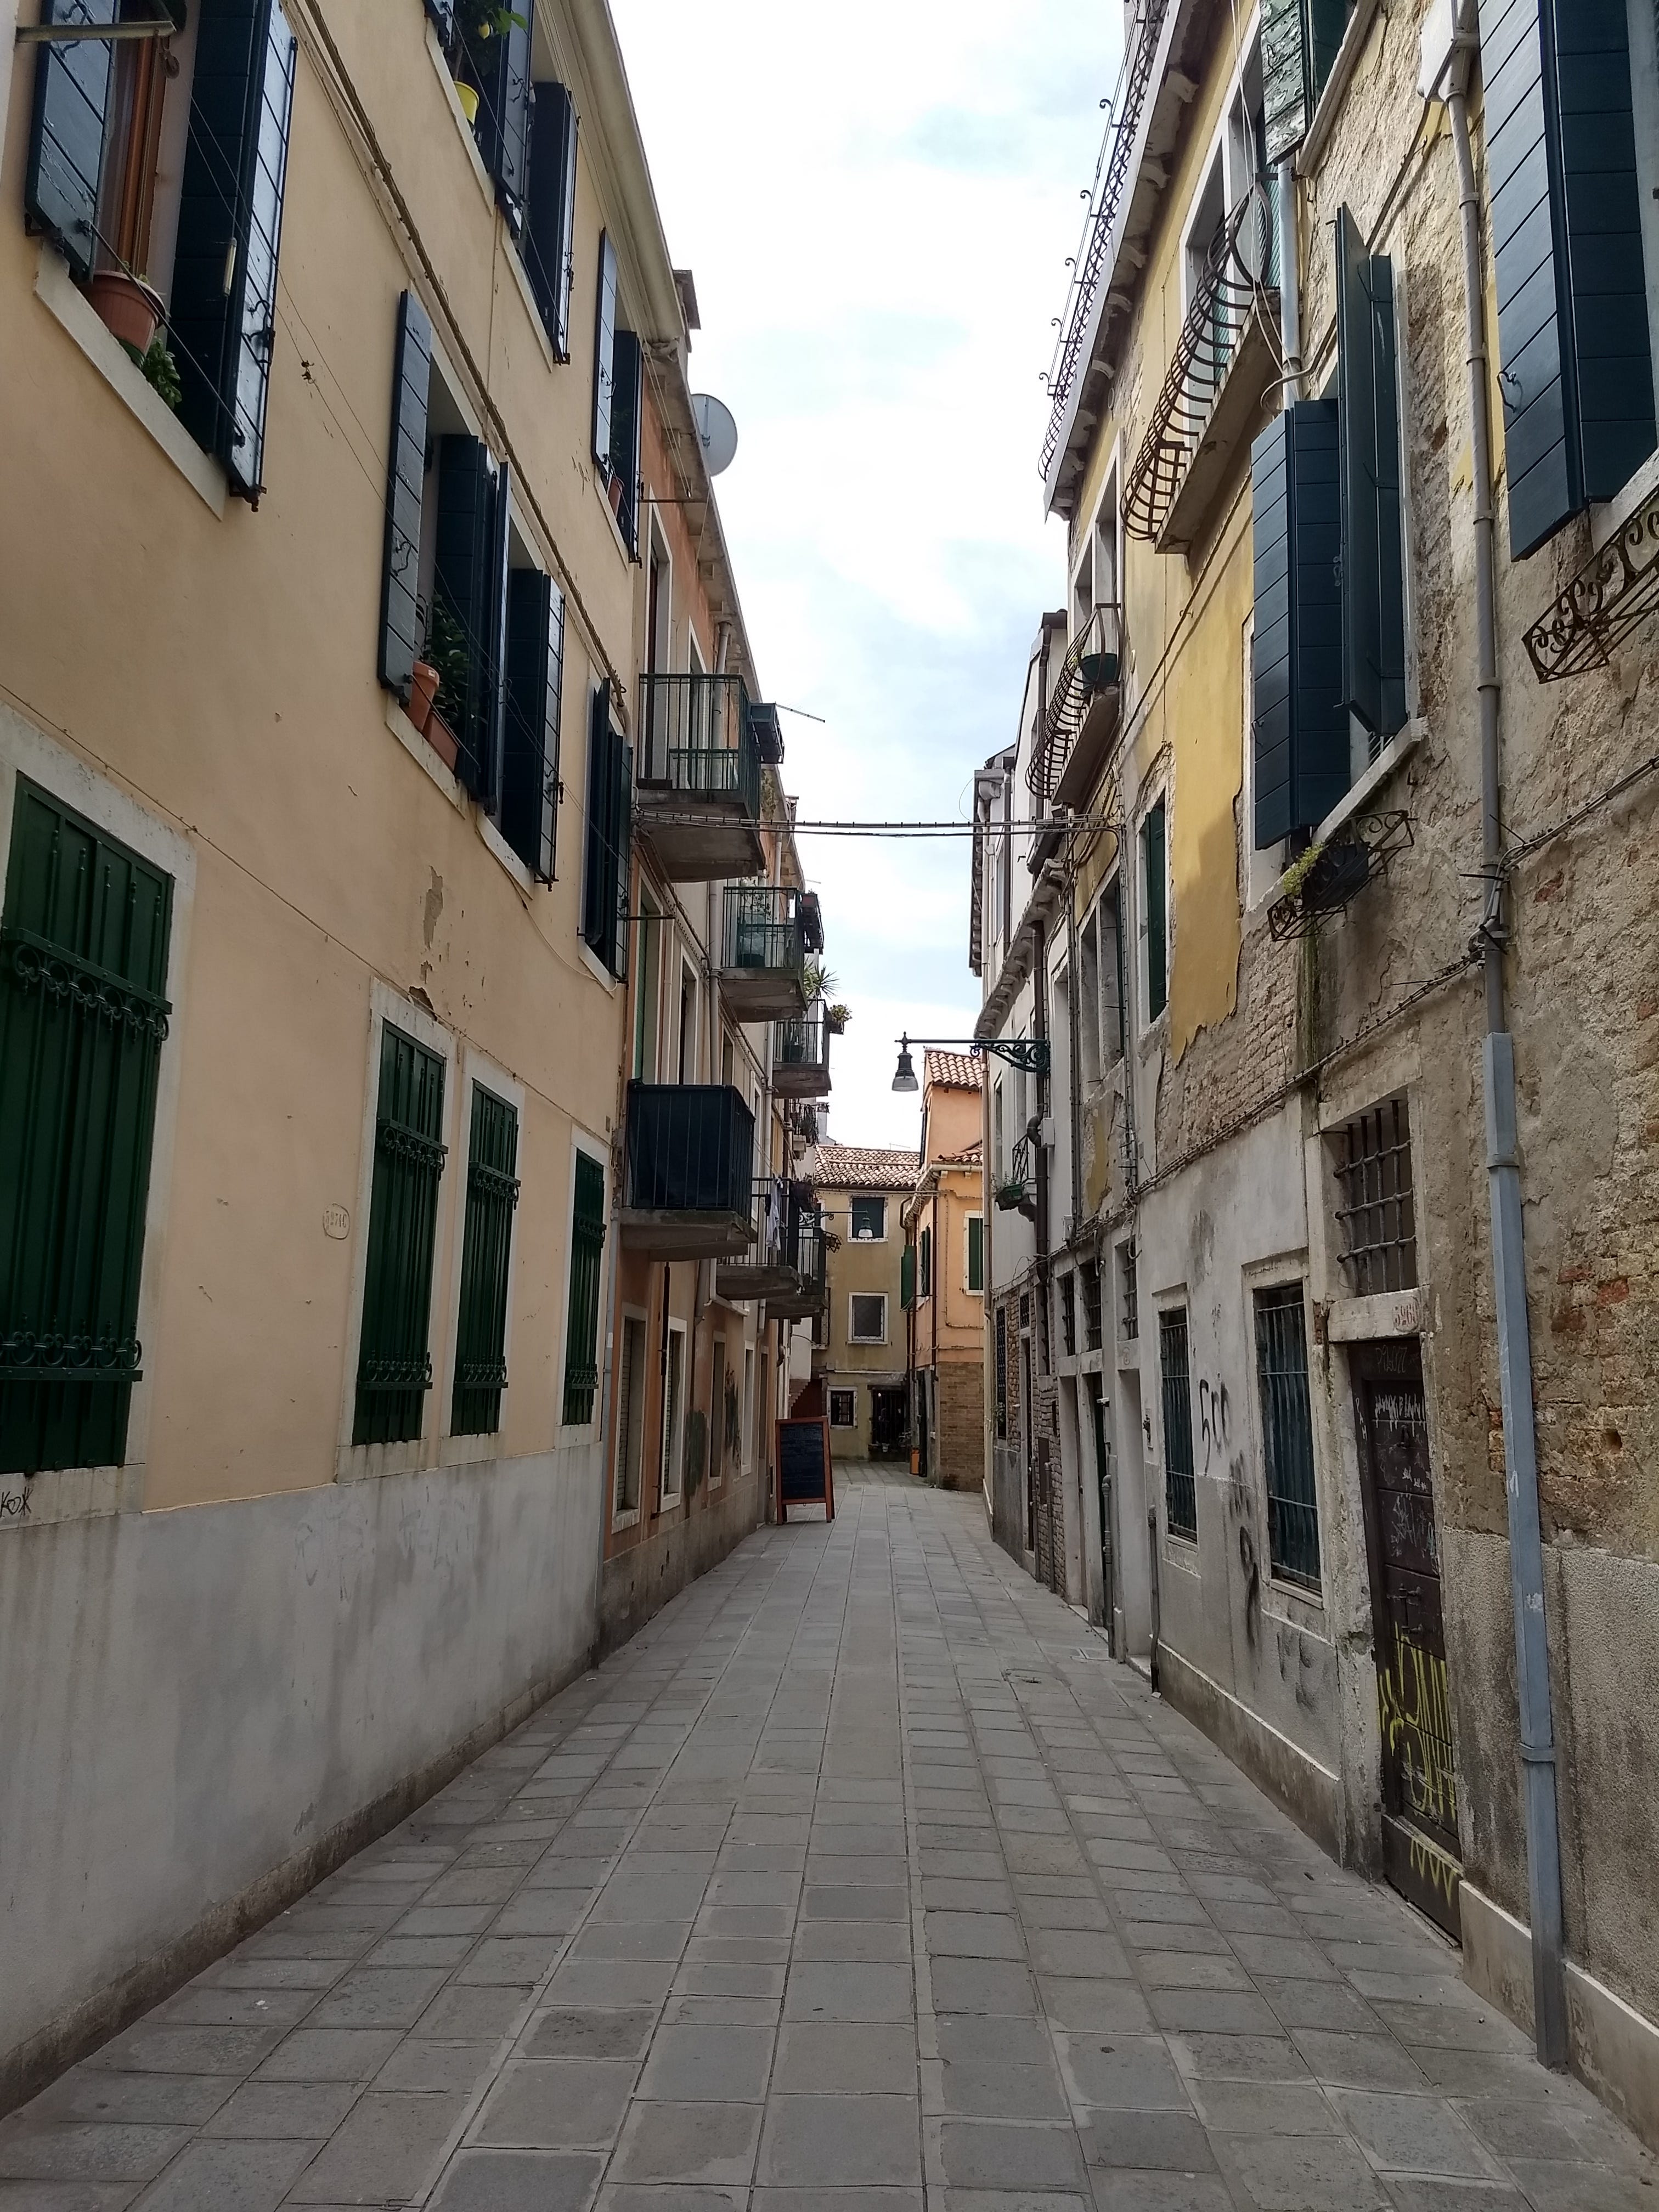 Alleyways of Venice